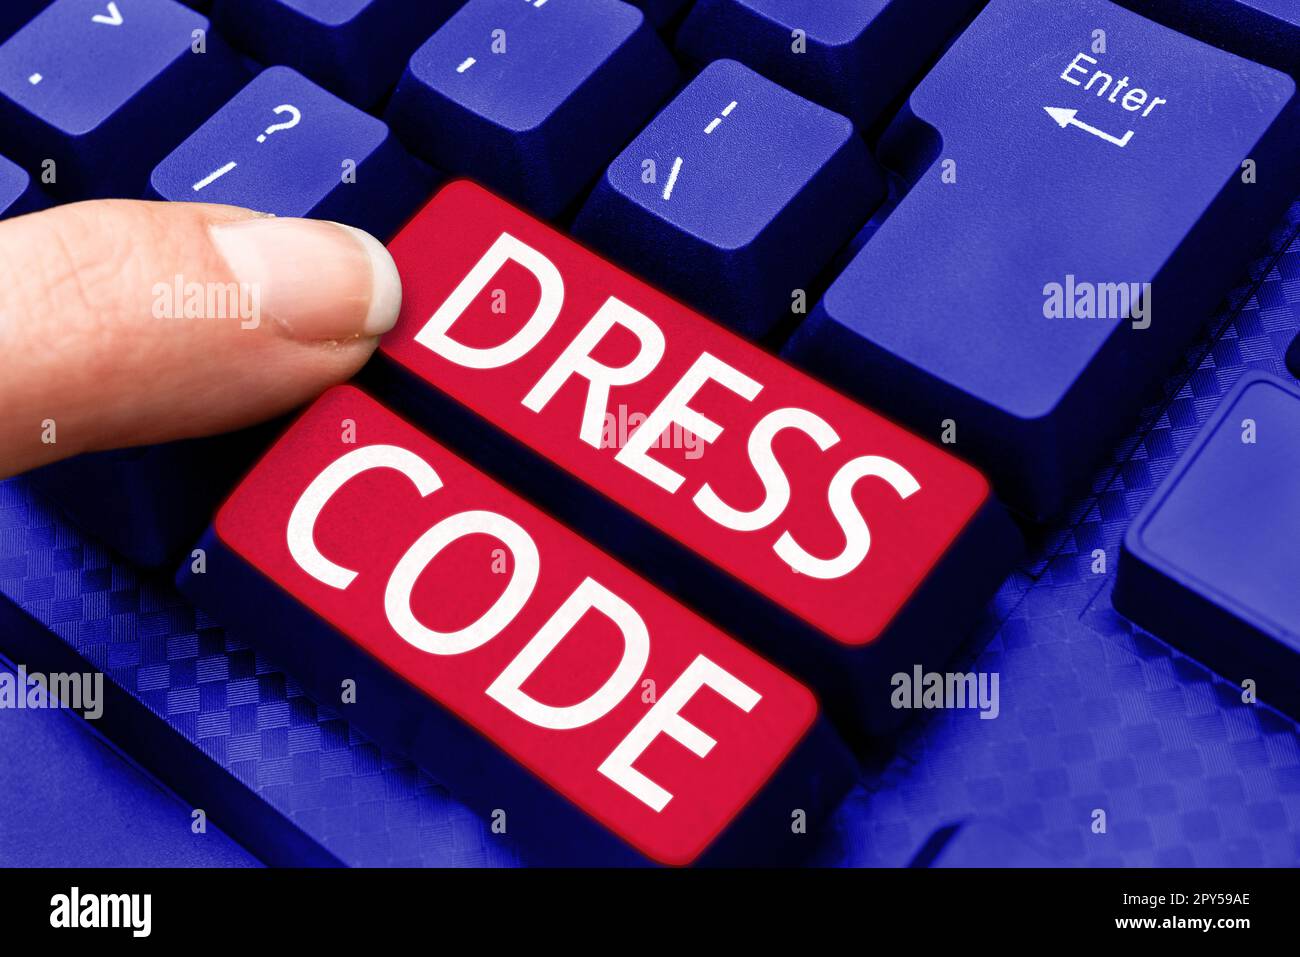 Code vestimentaire de l'affiche manuscrite. Idée d'affaires une façon acceptée de s'habiller pour une occasion ou un groupe particulier Banque D'Images